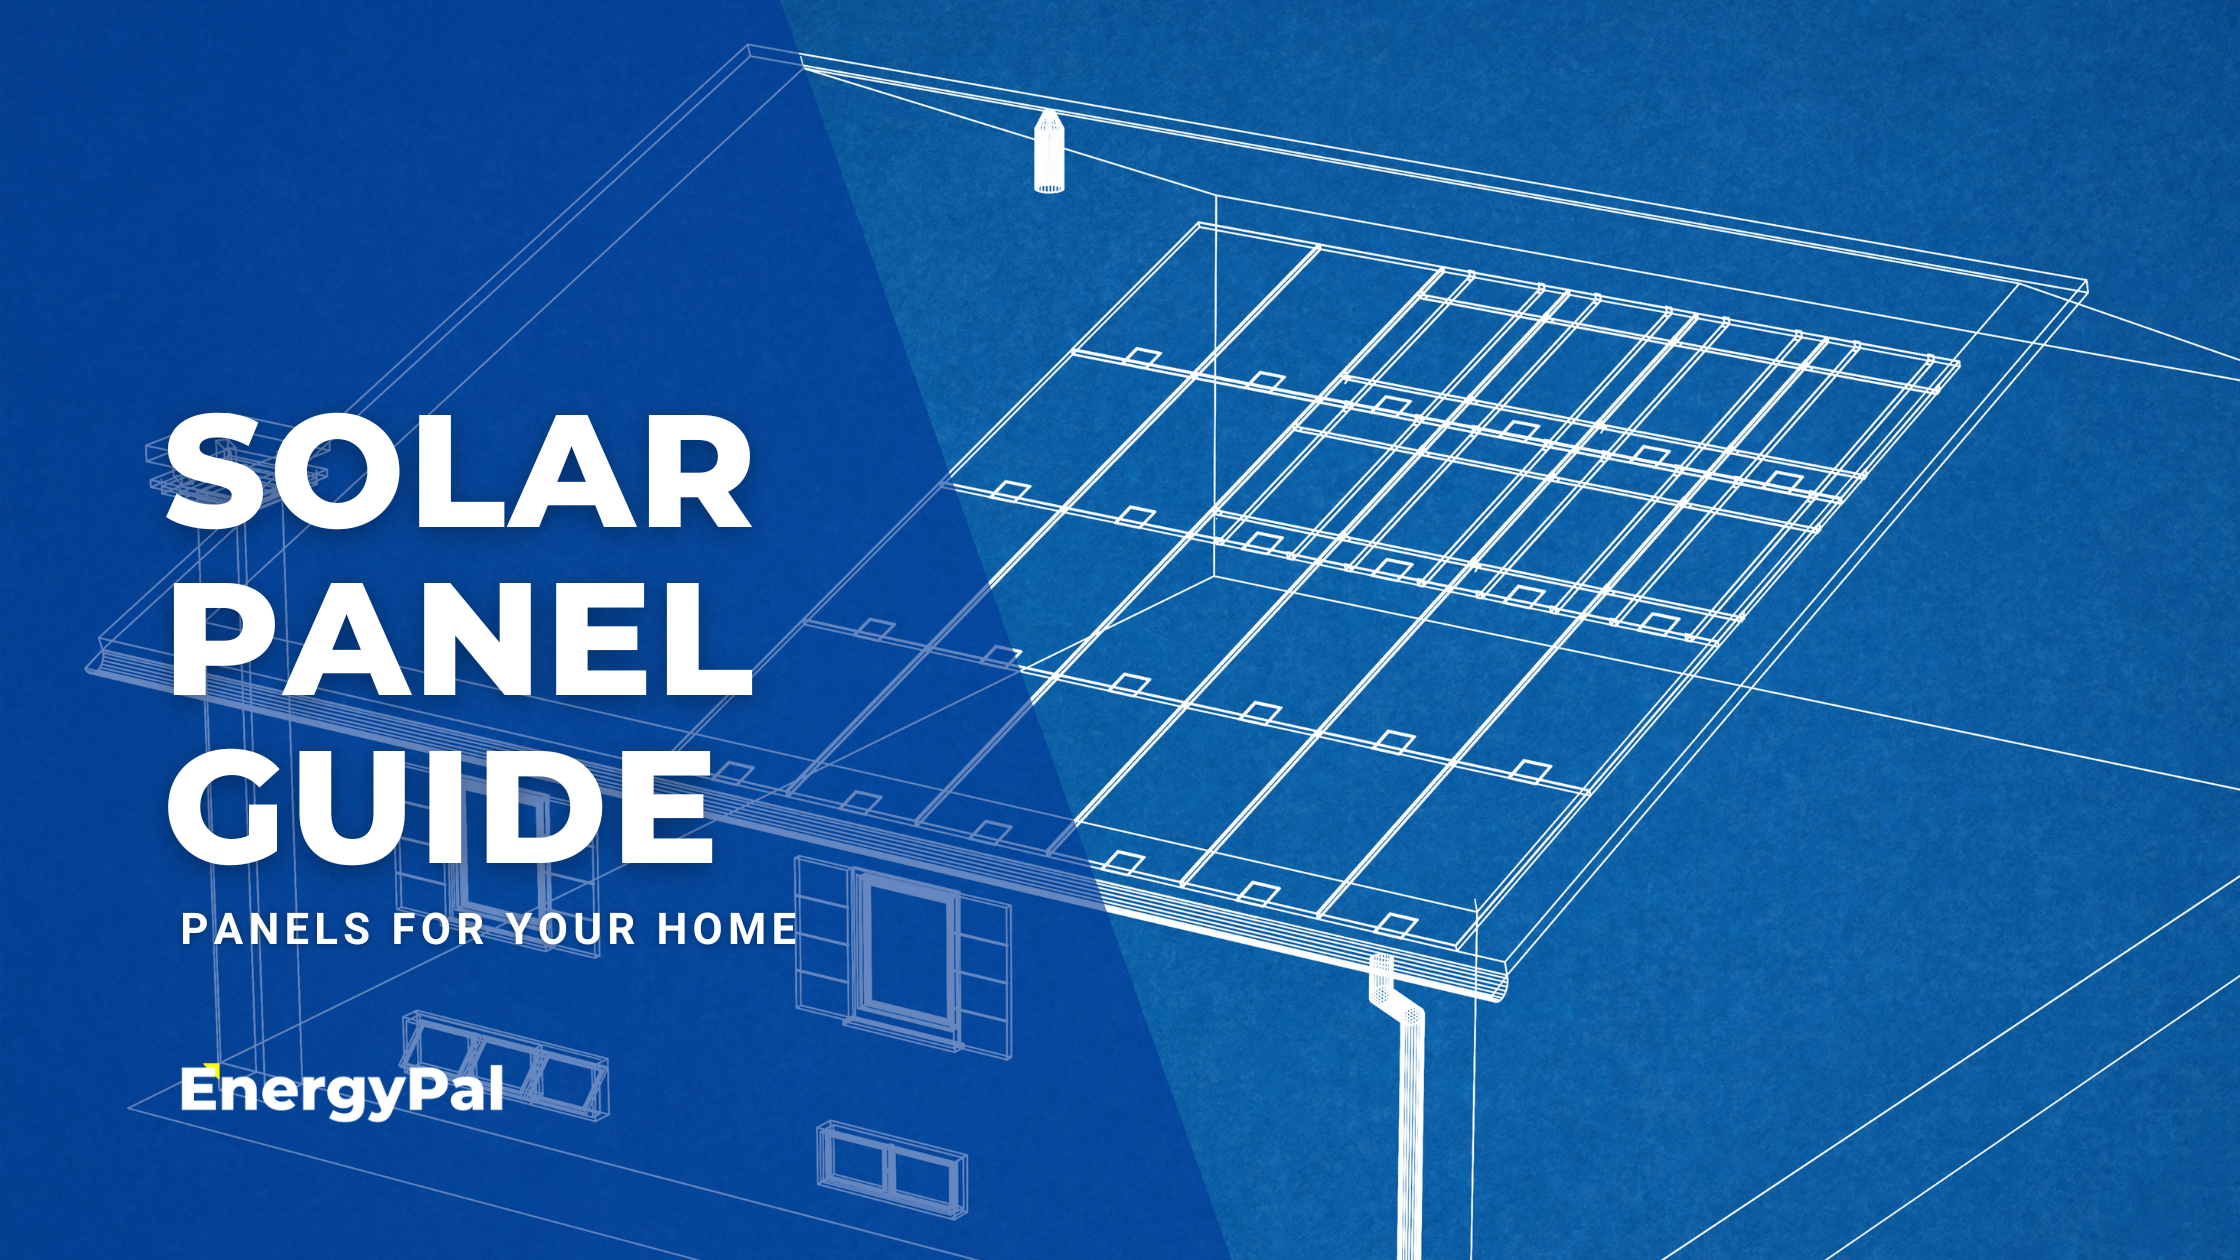 Solar panels guide